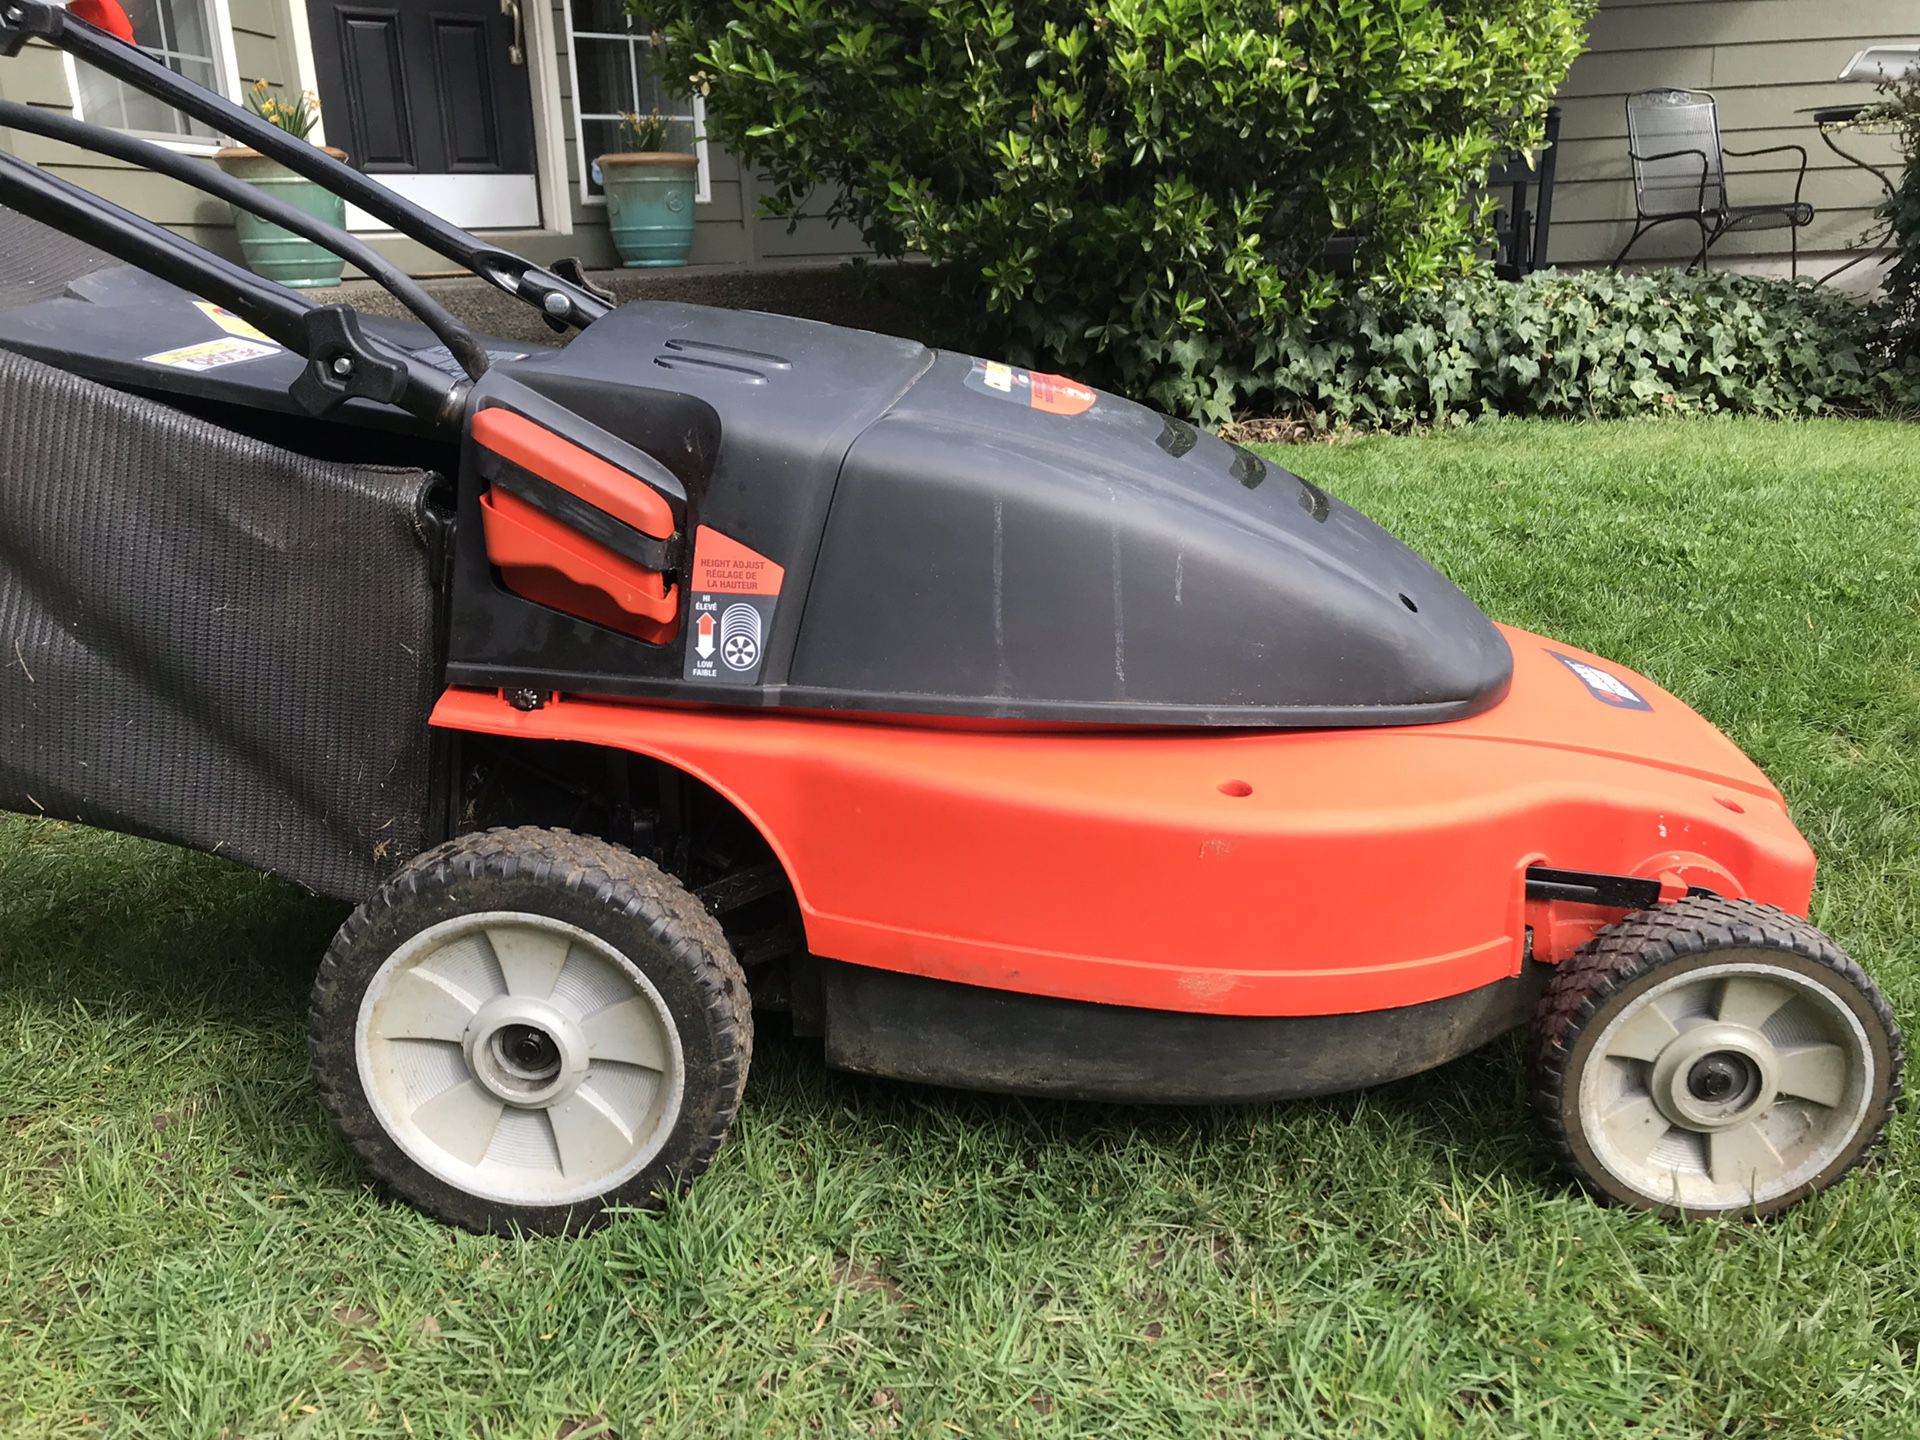 Black & Decker CMM1200 Lawn Mower Replacement Battery Set